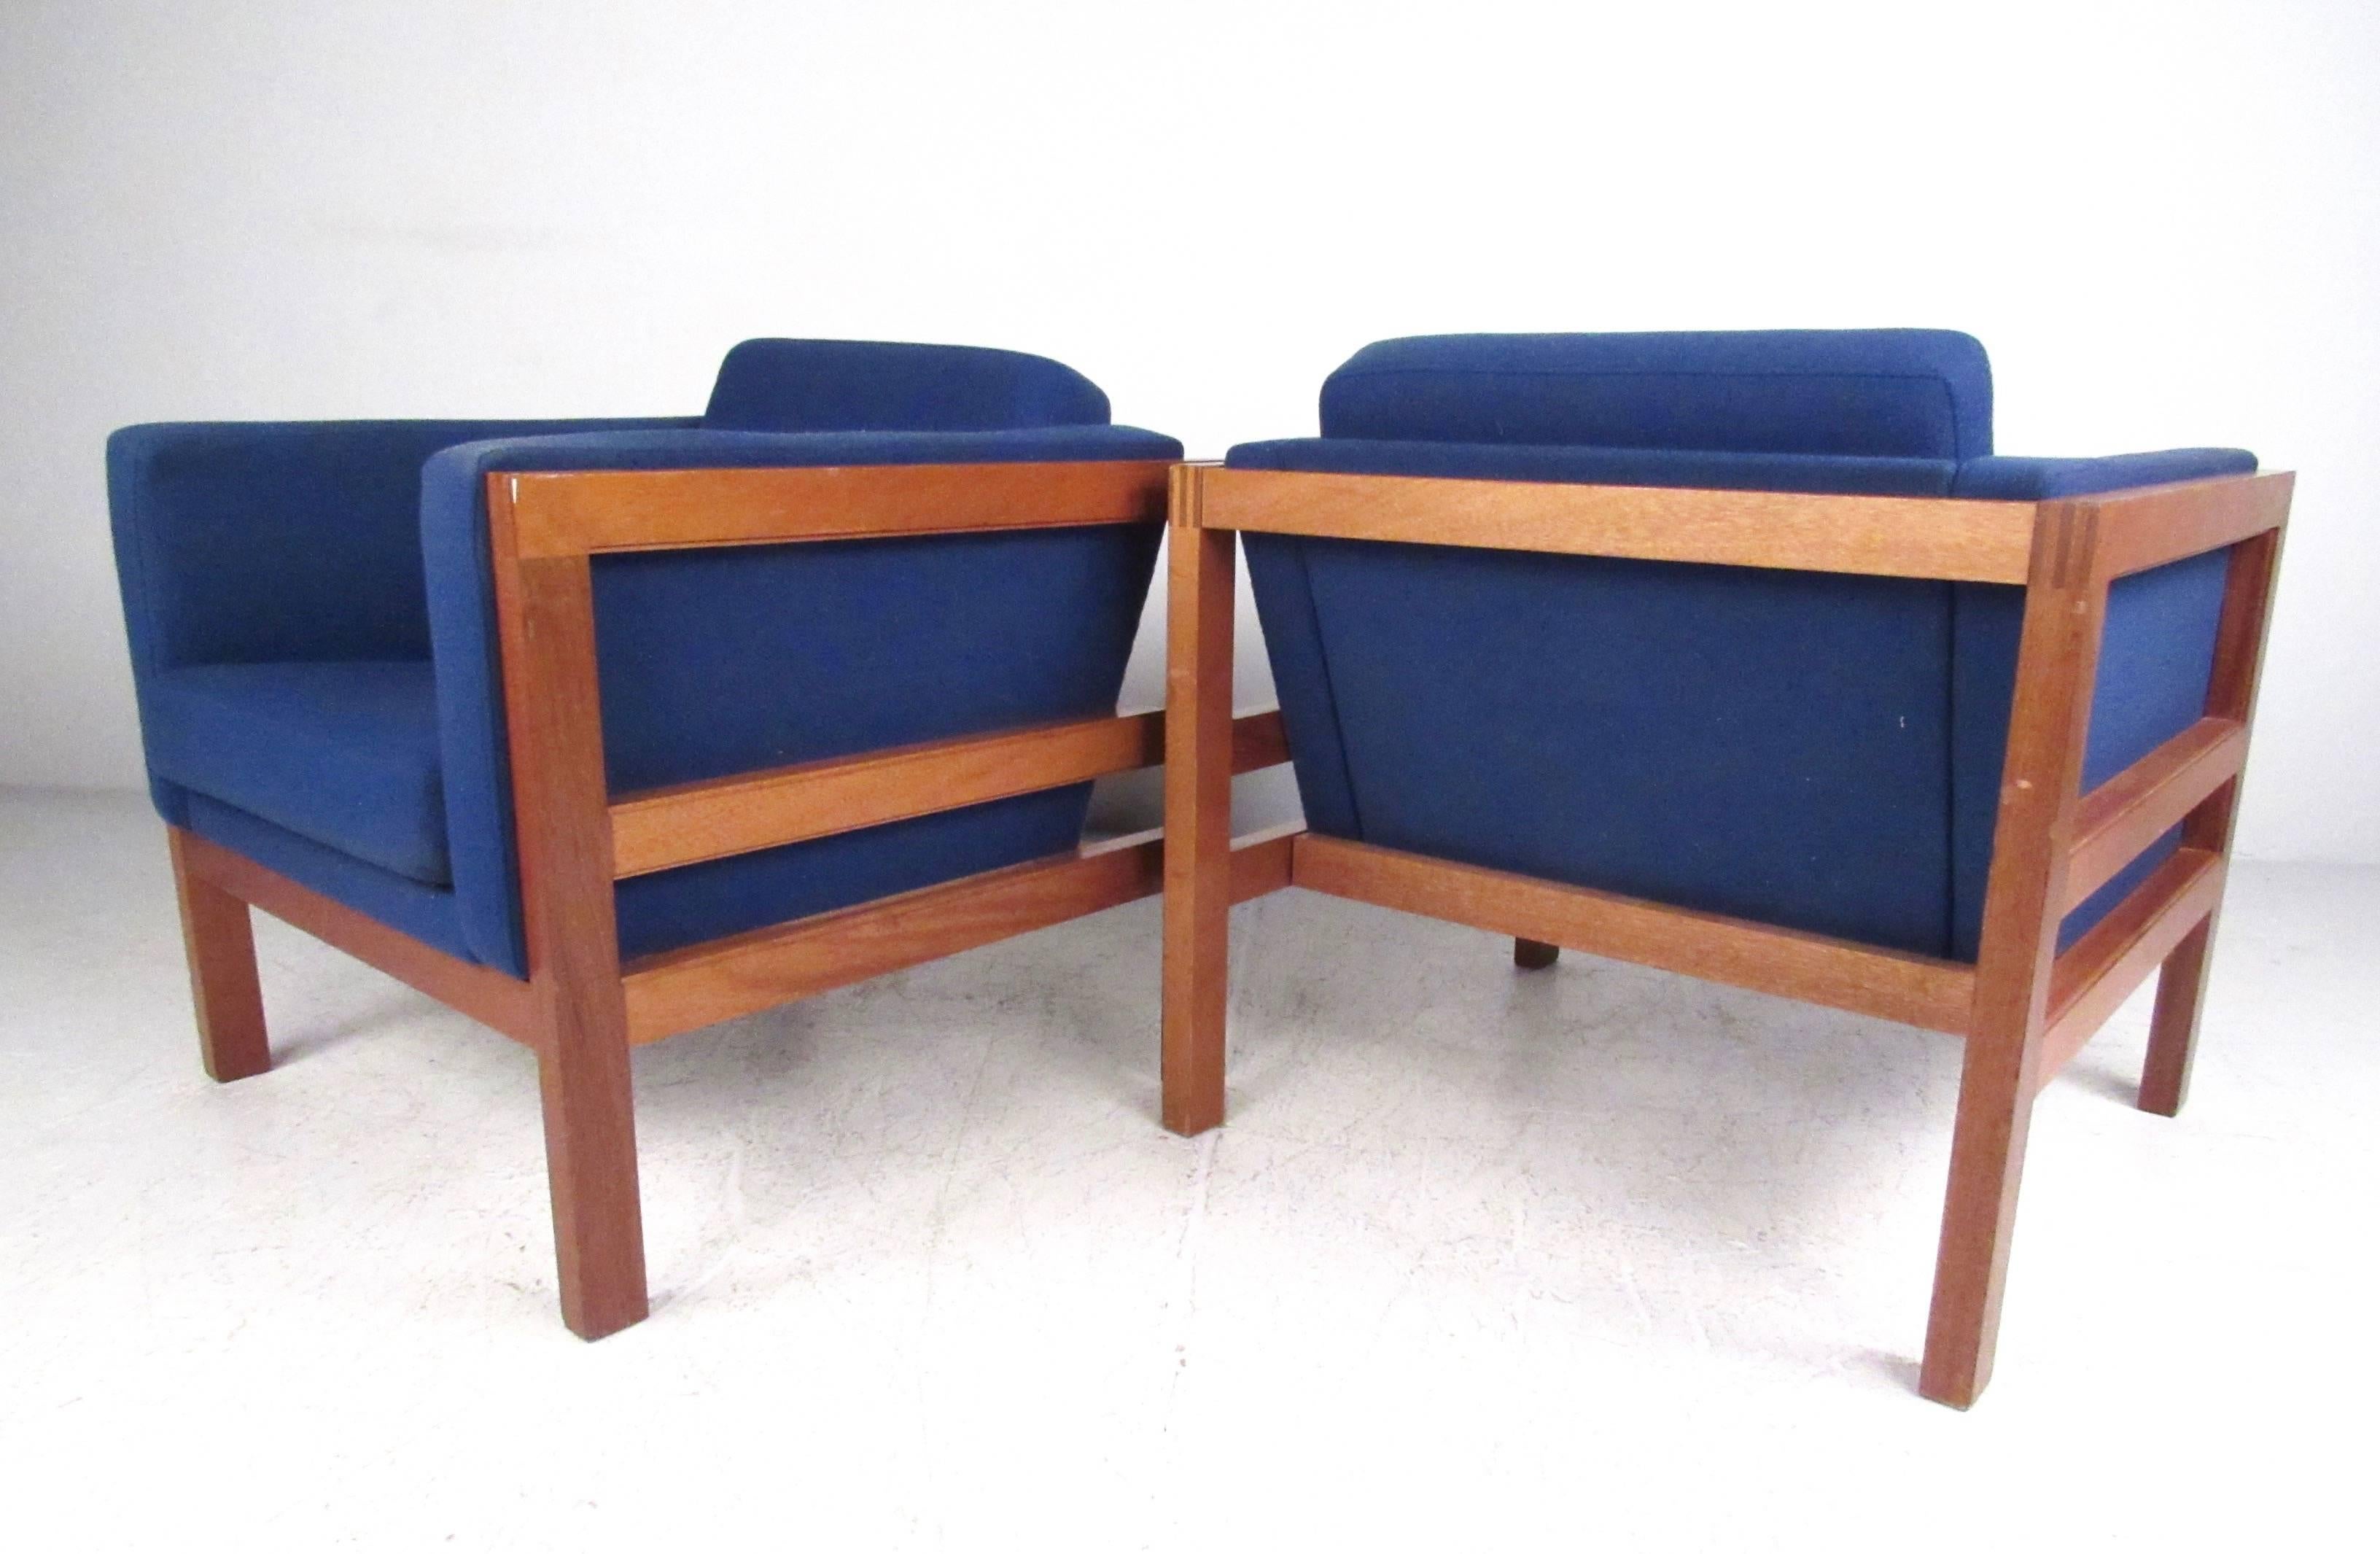 Cette élégante paire de chaises longues en teck danois est un bel ajout au style du milieu du siècle à n'importe quel intérieur. La construction en queue d'aronde de qualité, les sièges à sangles confortables et le tissu bleu vintage vibrant